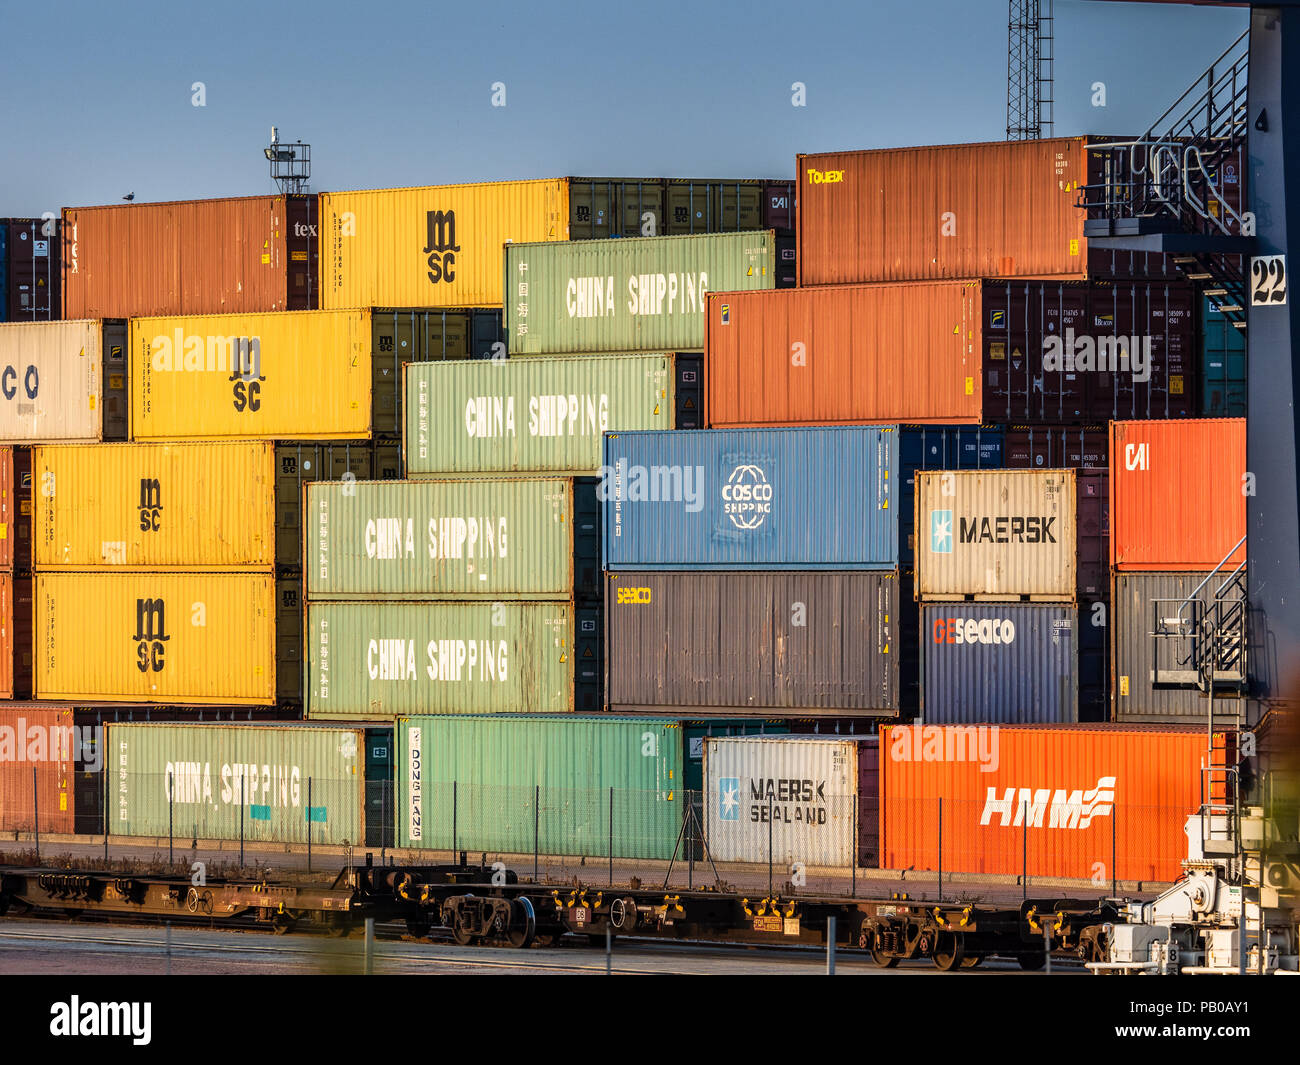 Trasporto ferroviario UK - intermodale Container Trade - trasporto i container attendono il carico sui treni al porto di Felixstowe, il più grande porto per container del Regno Unito Foto Stock